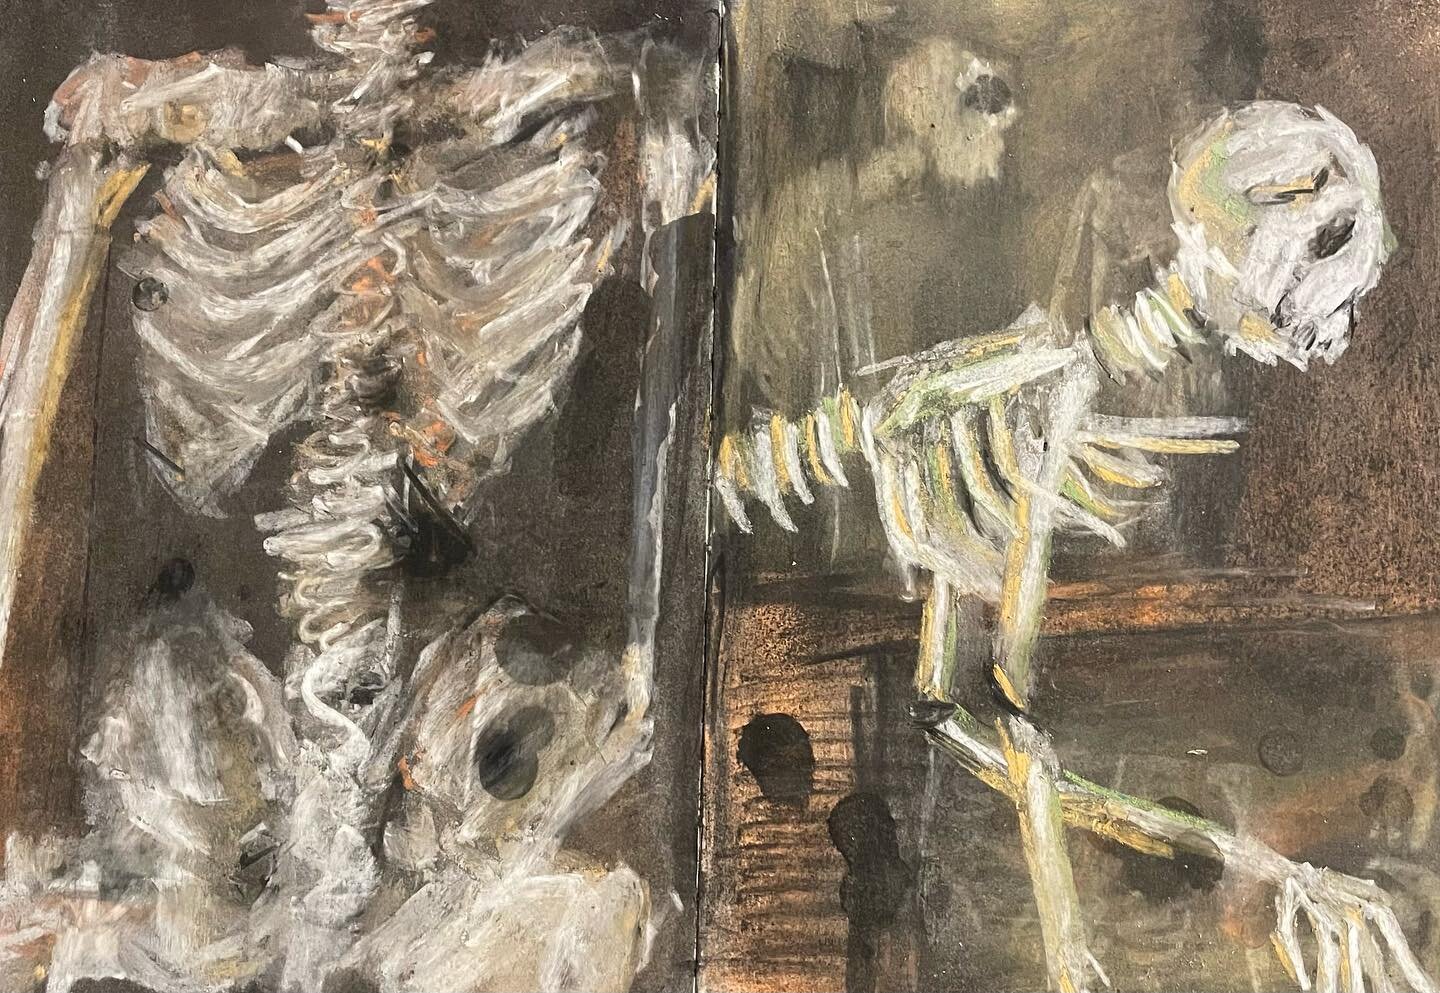 Skeleton studies in charcoal and pastels.
.
.
.
.
.
.
#illustration #illustrator #illustrationartists #animator #skeletonstudy #anatomystudy #skeletonart #decayart #animationgraduate #illustrations #sketchbook #sketchbookdrawing #sketchbookart #sketc